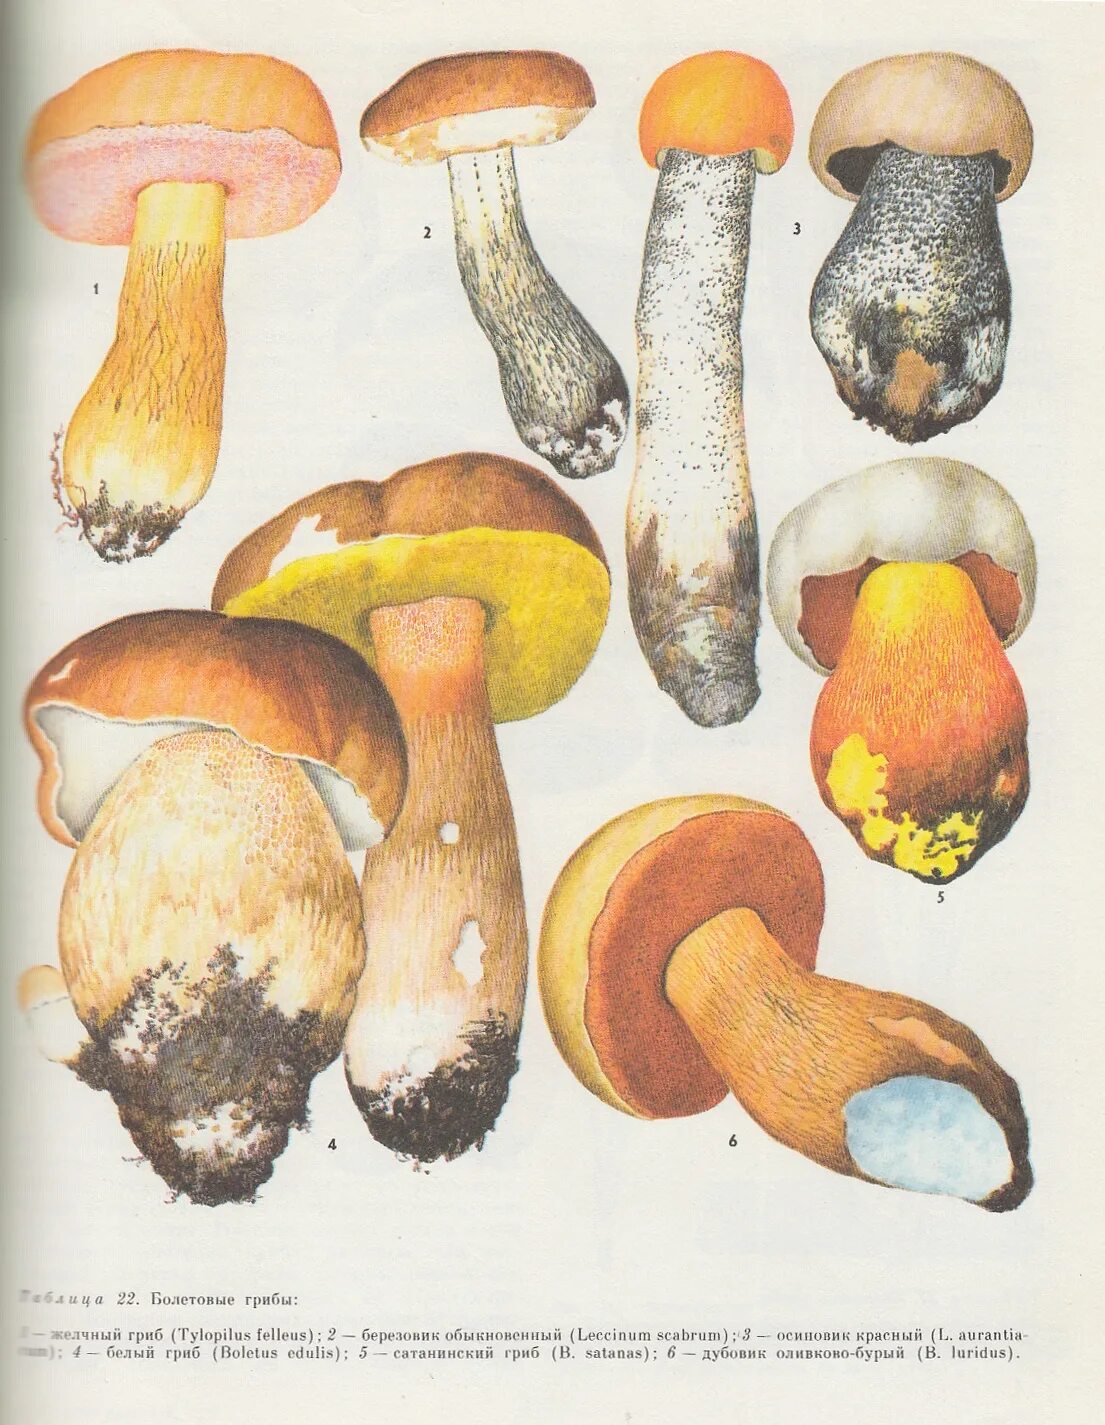 Желчный гриб и другие. Желчный гриб и другие атлас определитель 2. Атлас-определитель грибы желчный гриб и другие. Желчный гриб и другие атлас. Атлас-определитель окружающий мир 2 желчный гриб и другие.